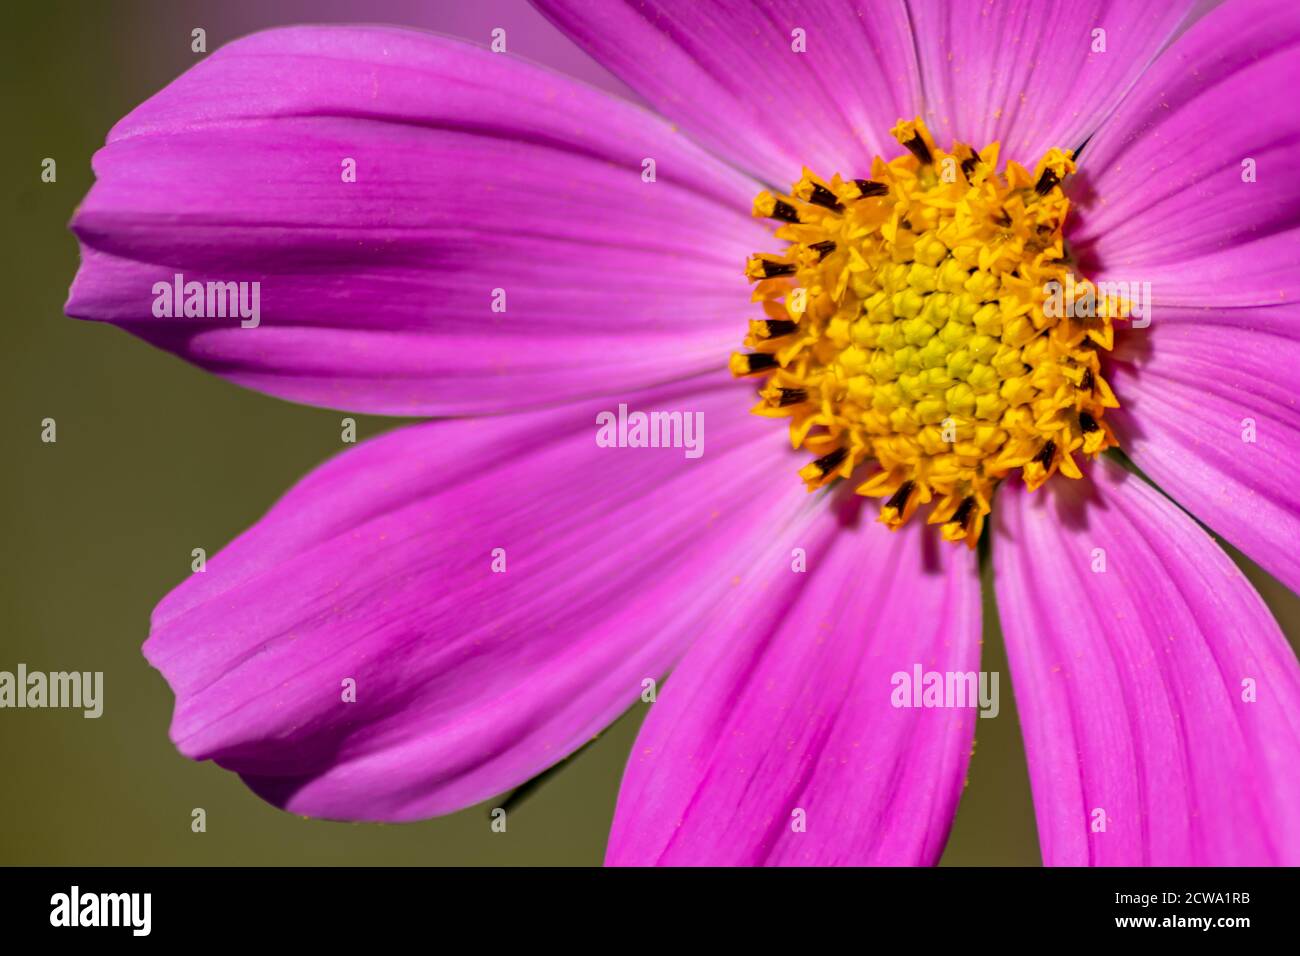 Ritratto di bellissimi fiori rosa-viola con intensi piselli gialli brillanti mostra la bellezza della primavera e i fiori filigranati in colpo pieno Foto Stock